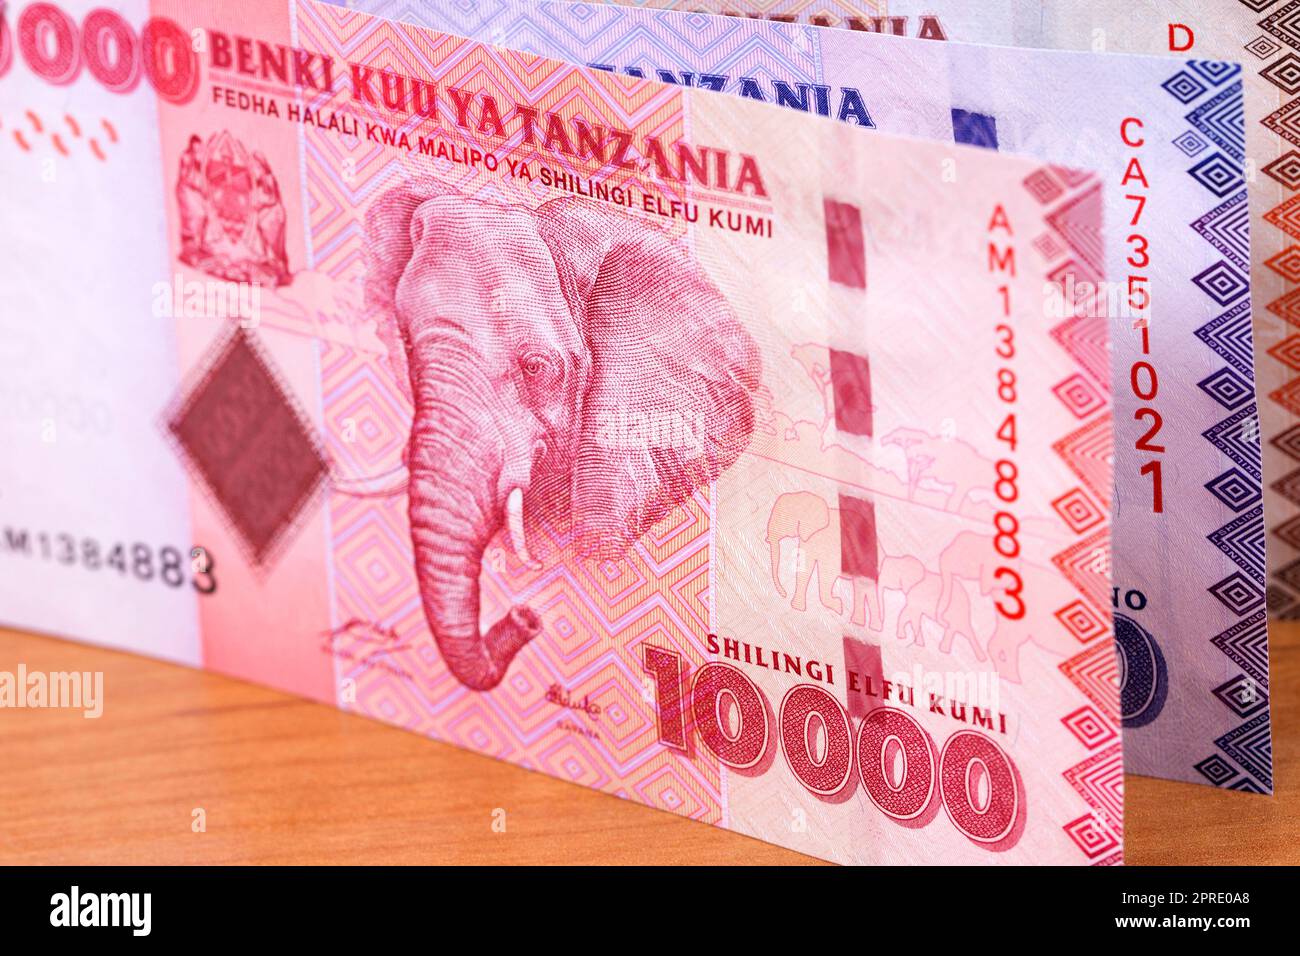 Tanzanian money a business background Stock Photo